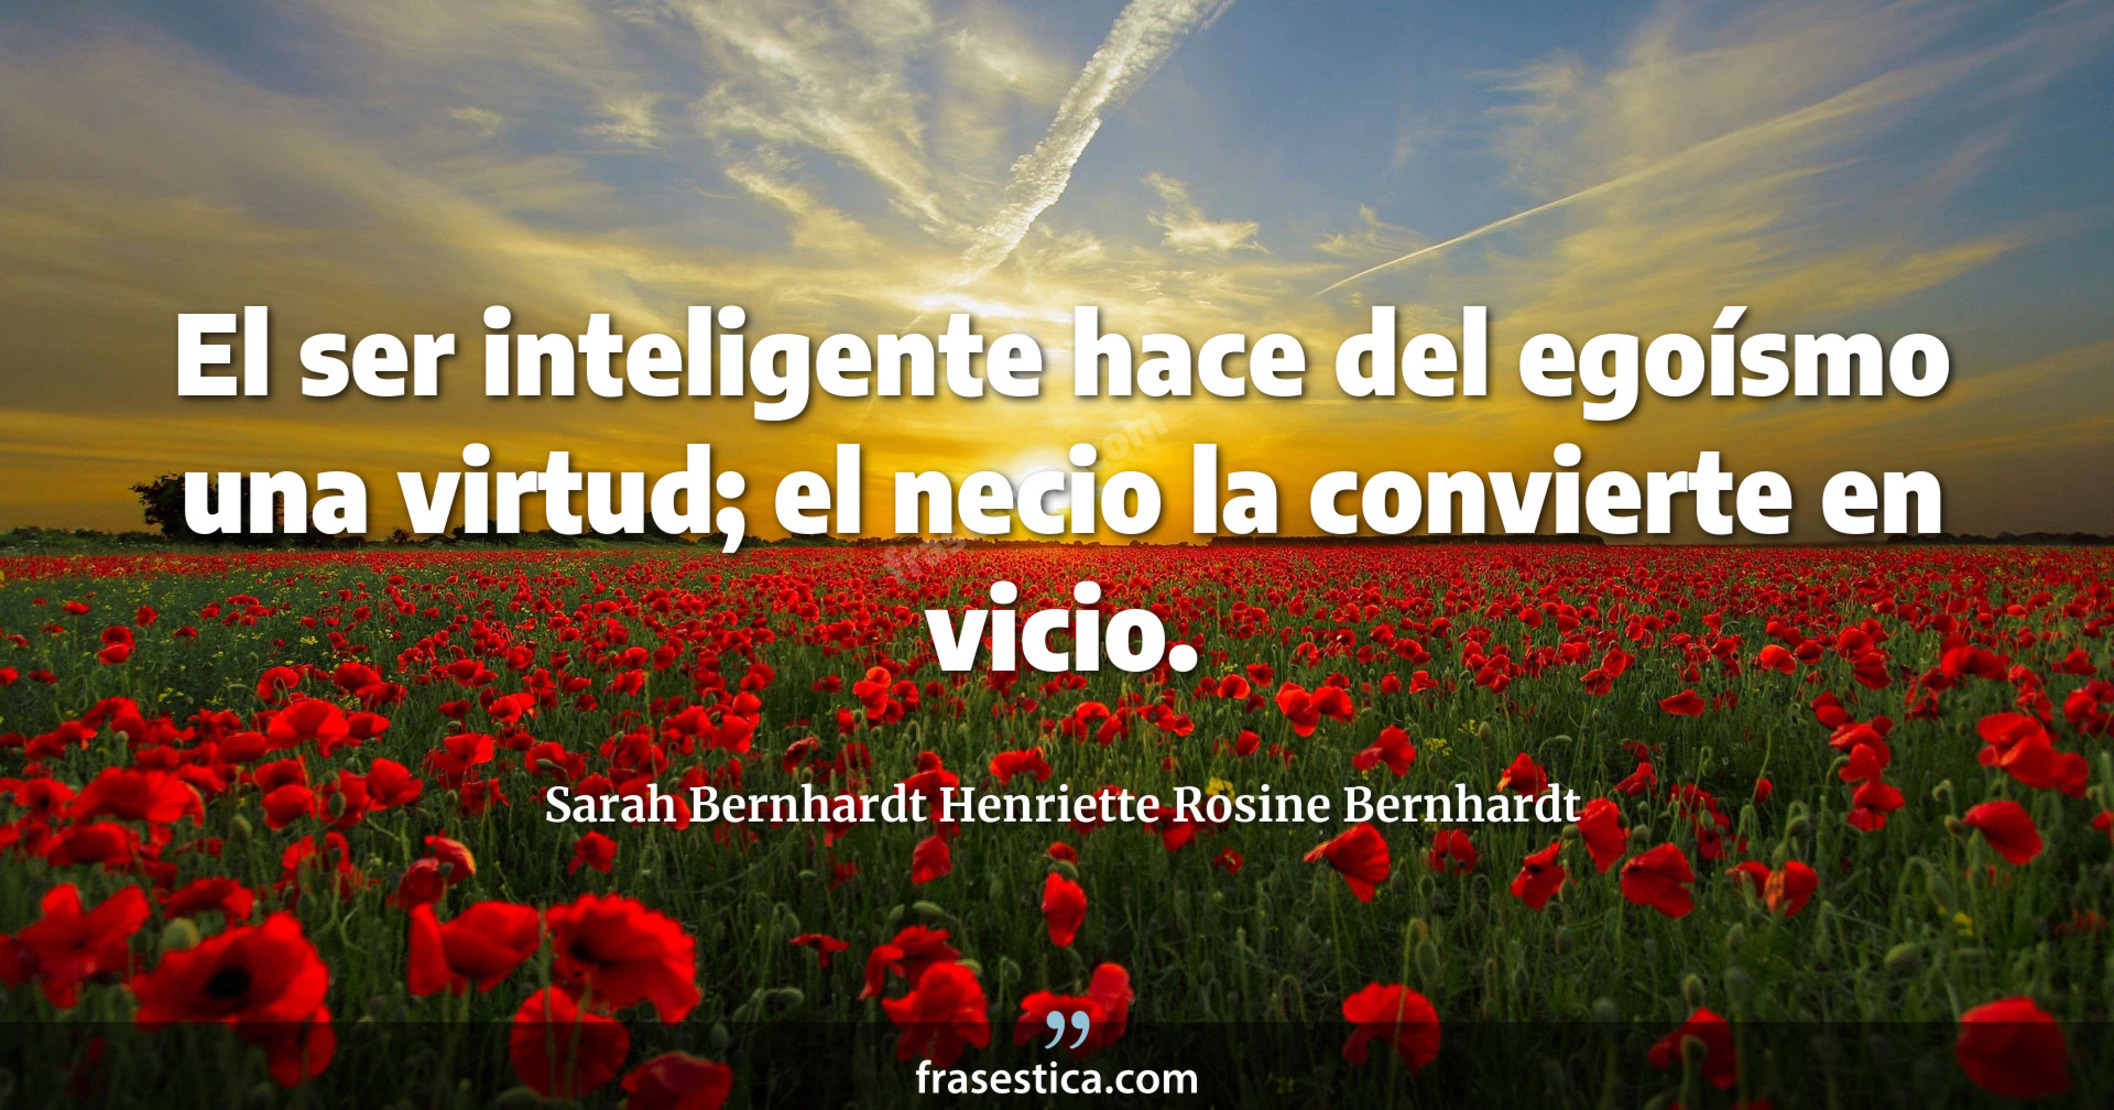 El ser inteligente hace del egoísmo una virtud; el necio la convierte en vicio. - Sarah Bernhardt Henriette Rosine Bernhardt